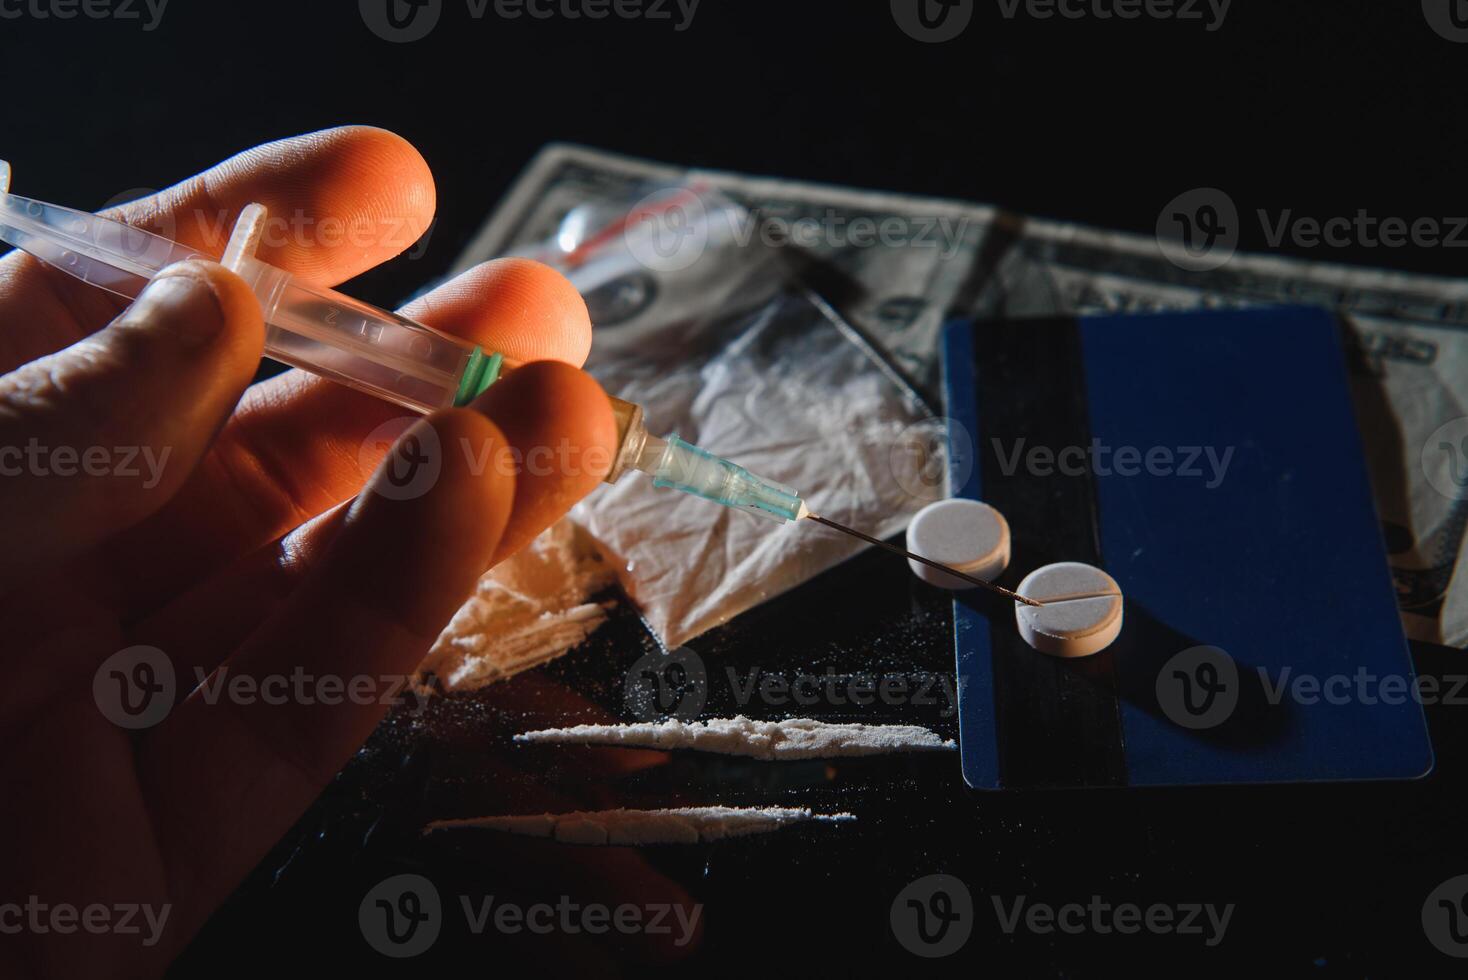 inköp, besittning och försäljning av läkemedel är straffbar förbi lag. många typer av narkotika och läkemedel representerade på tabell foto